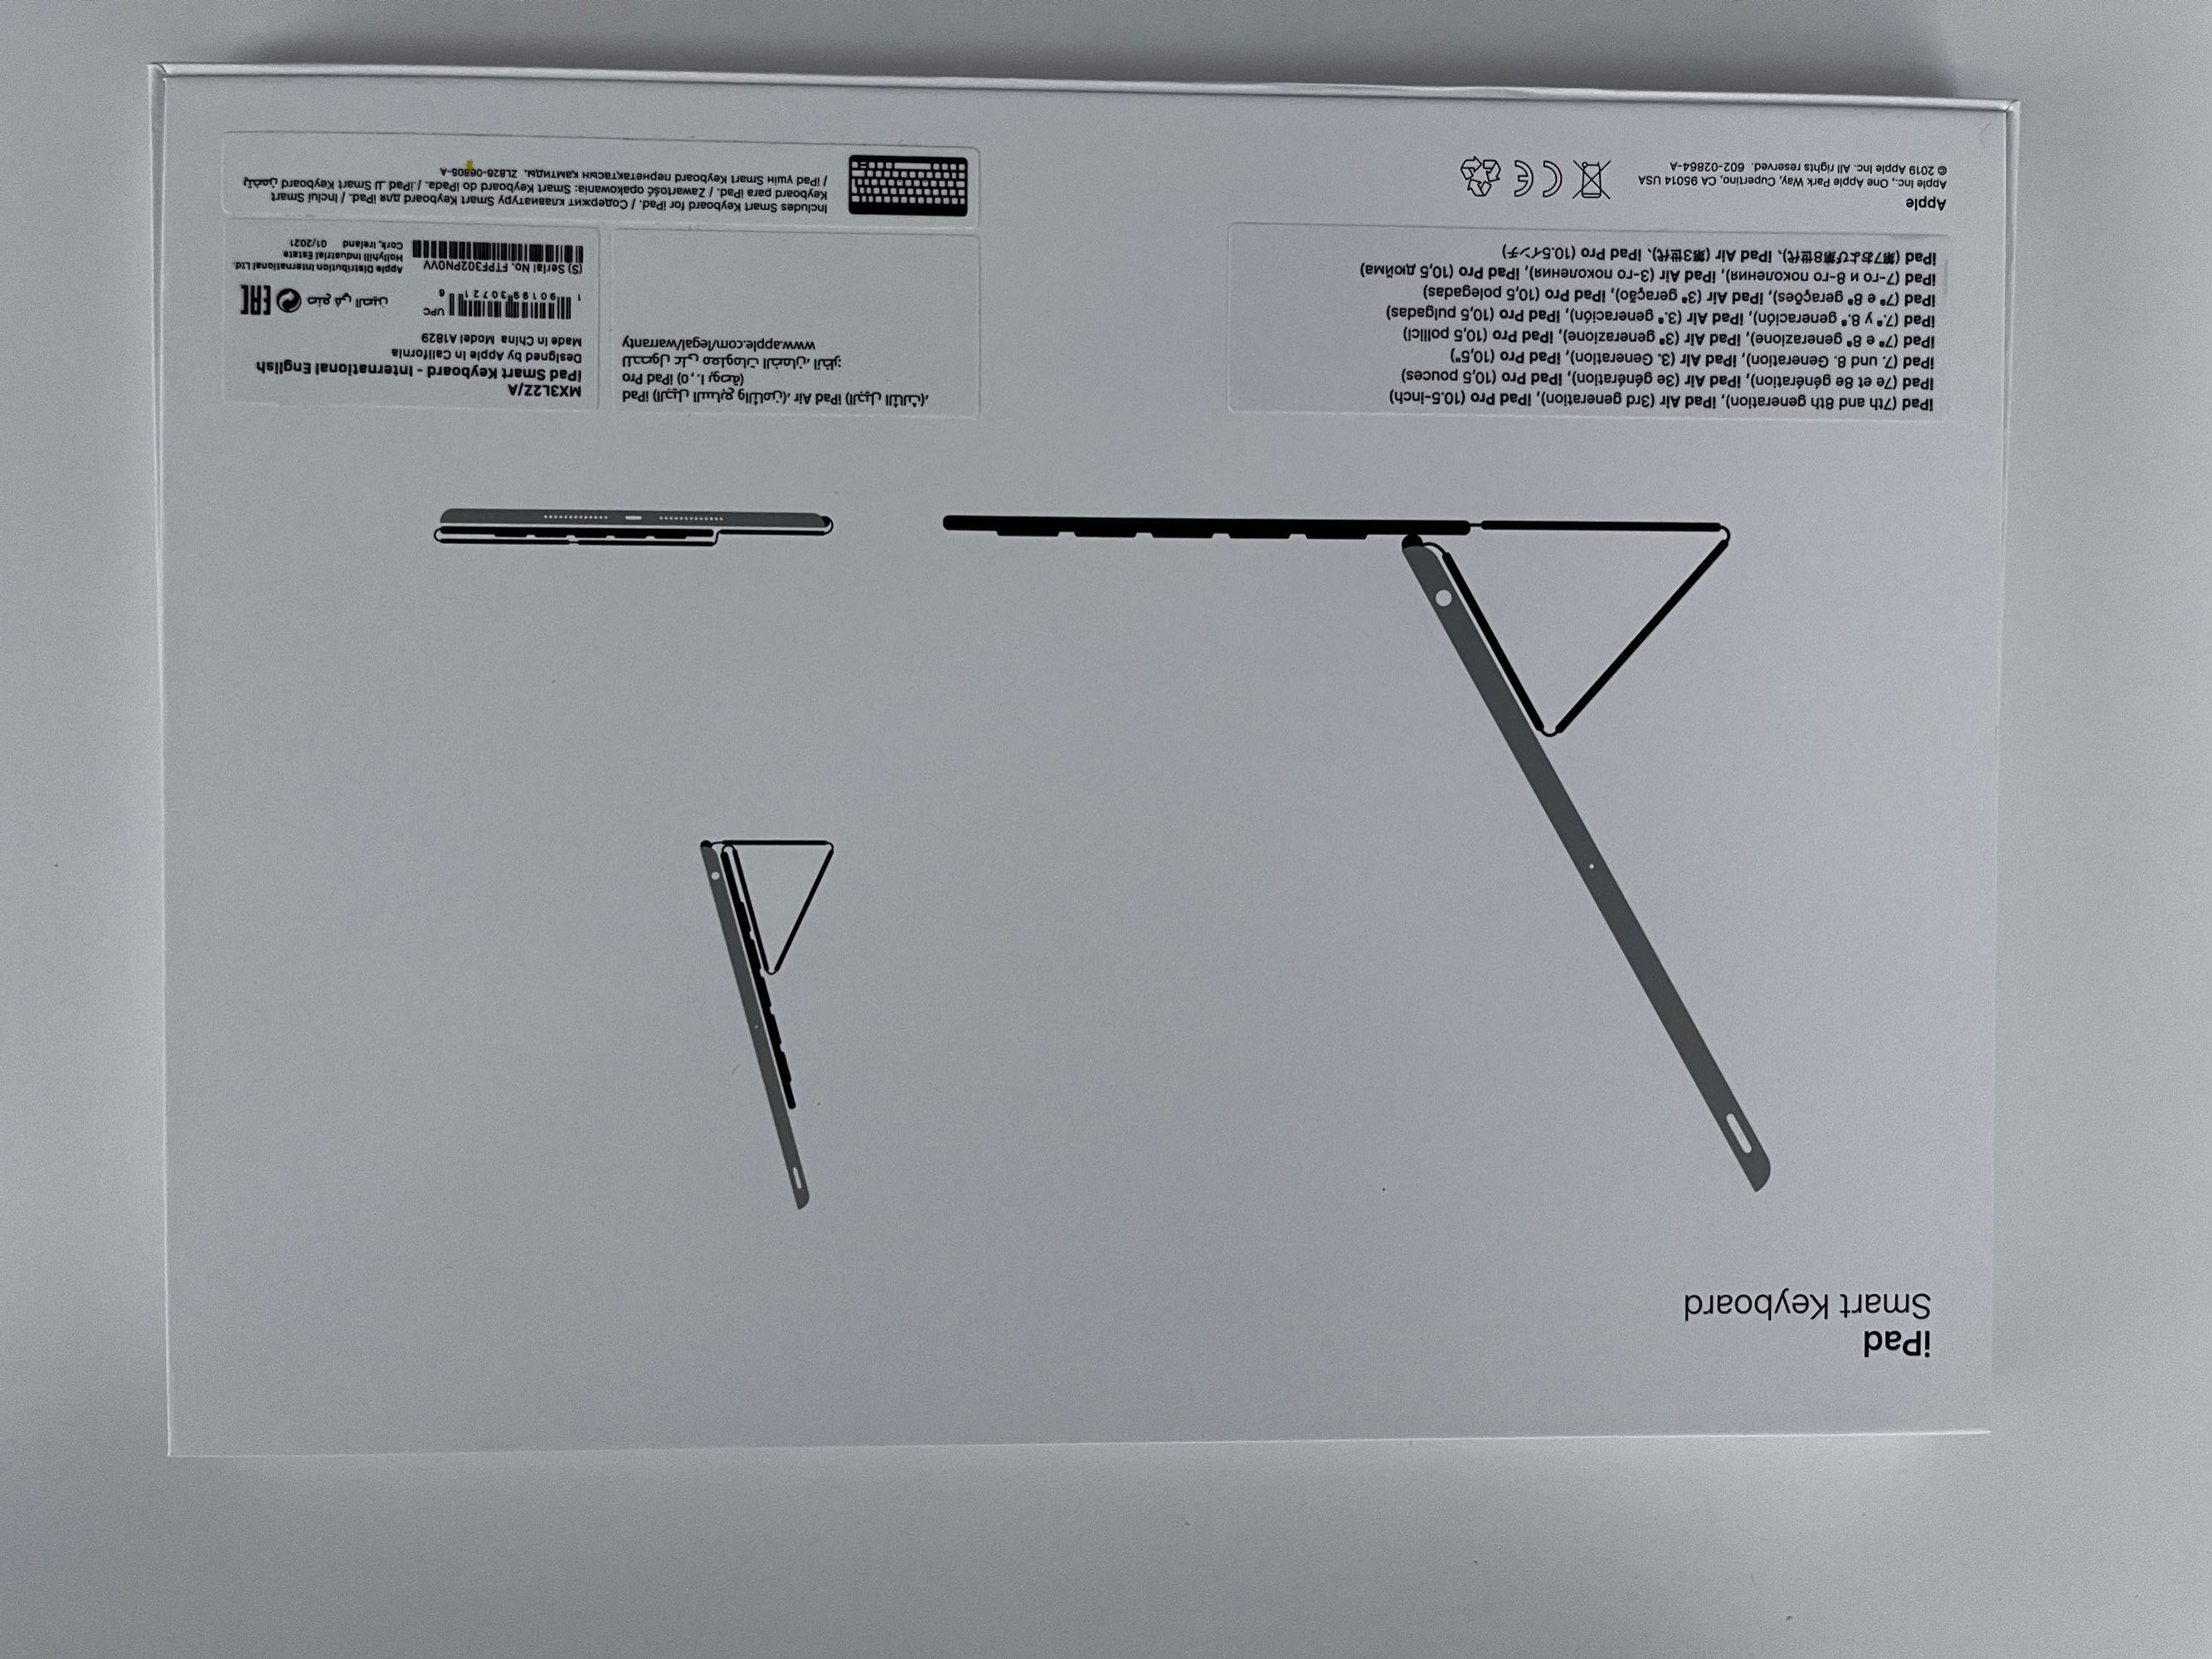 Tastatura Ipad Smart Key/ Ipad Air 3rd generation/ Ipad Pro 10.5 inch